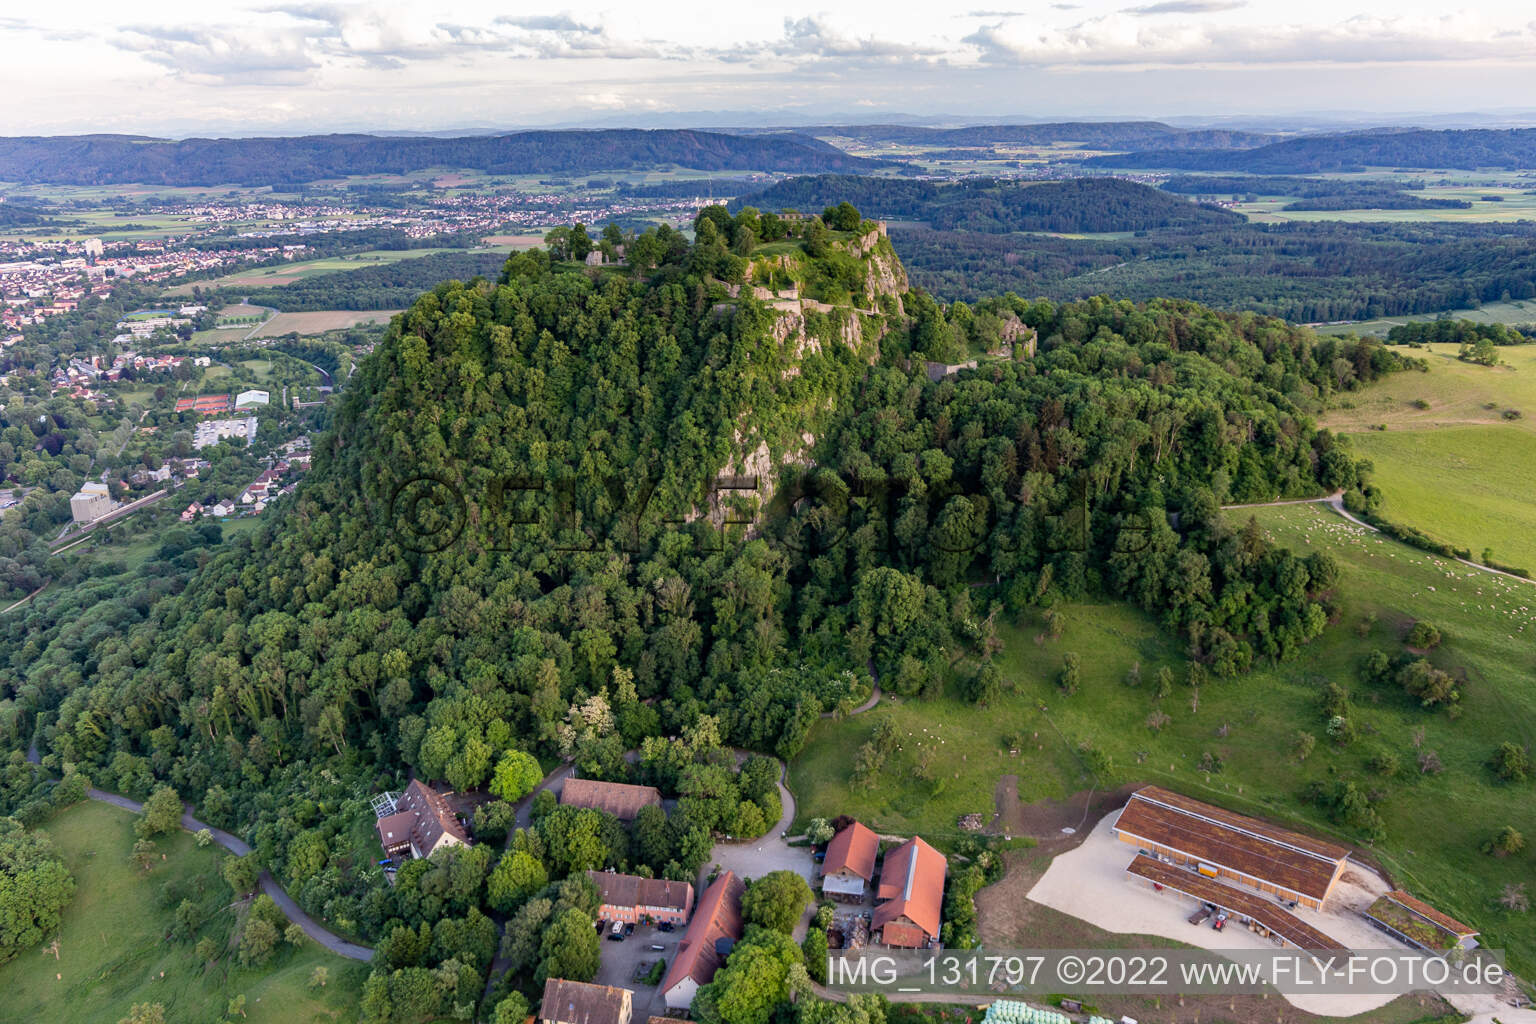 Vue oblique de Hohentwiel, avec ses ruines de forteresse datant de 914 et ses vues panoramiques, est un volcan éteint à Singen dans le département Bade-Wurtemberg, Allemagne